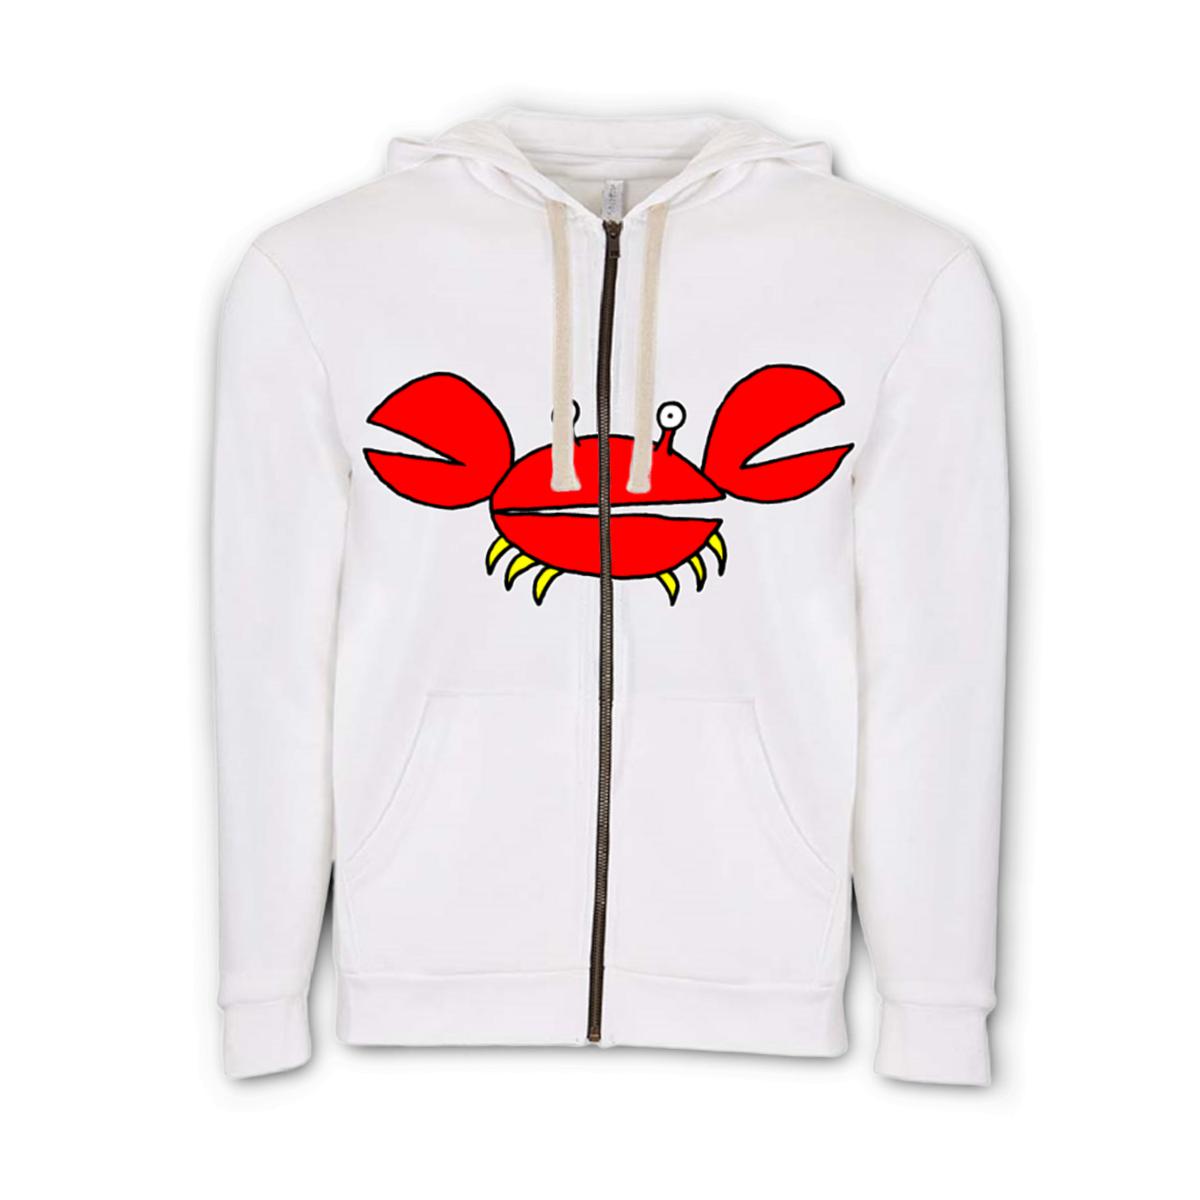 Crab Unisex Zip Hoodie Small white